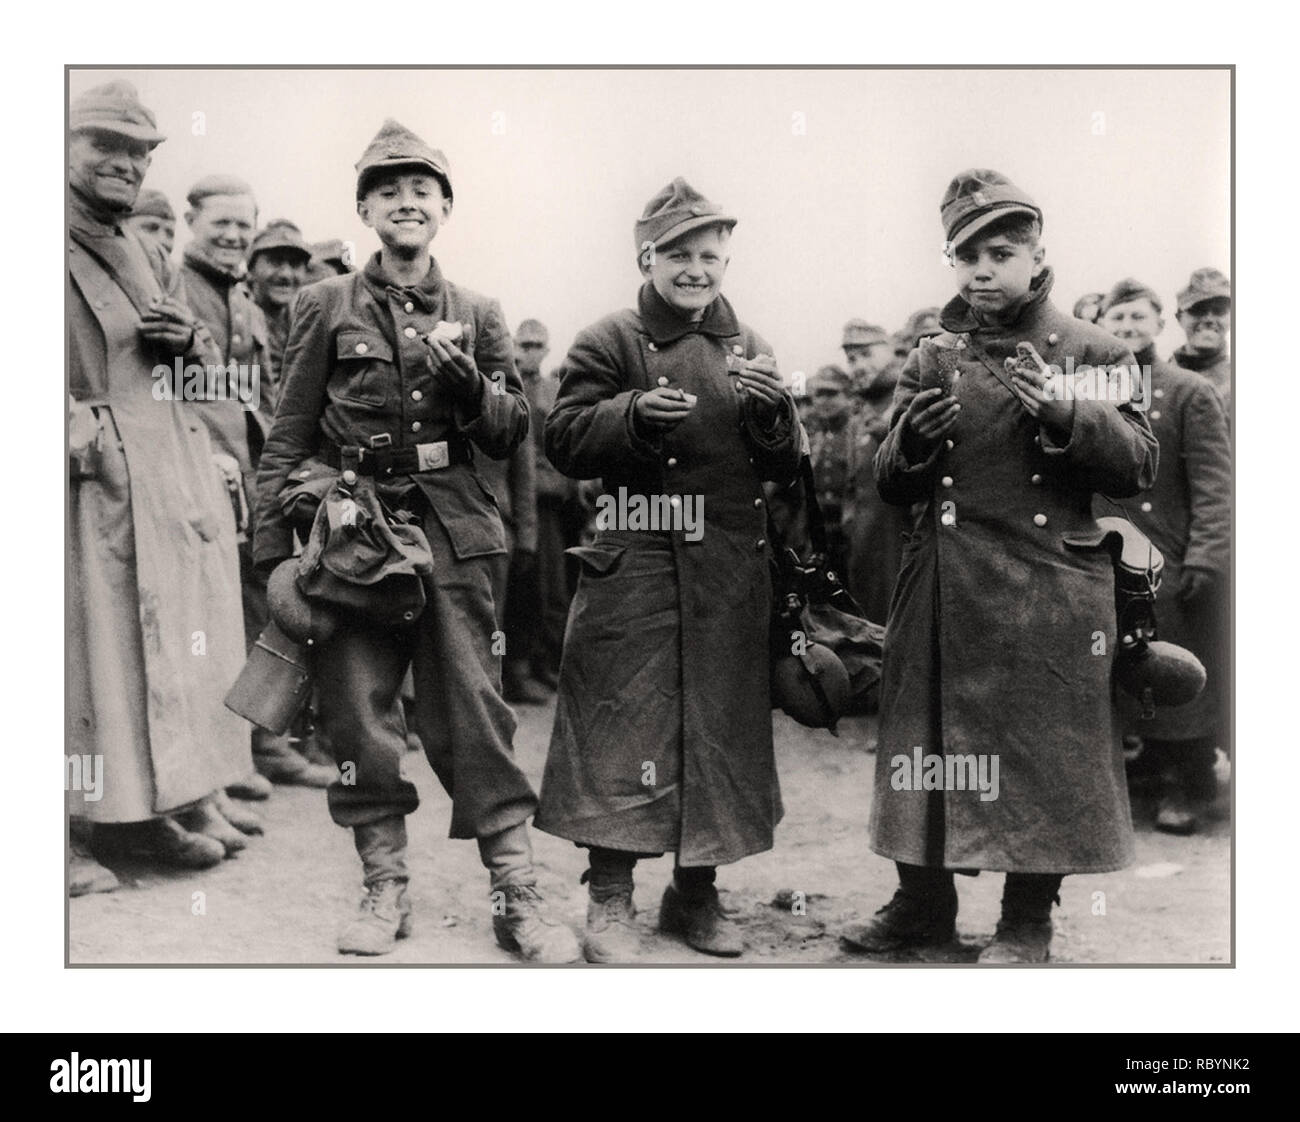 HITLER JUGEND Armee die 14-jährige Deutsche Jugendliche, Soldaten von Hitler Jugend, von Einheiten der US-Armee im April 1945 gefangen. Berstadt, Hessen Bundesland, Deutschland Datum: April 1945 Stockfoto